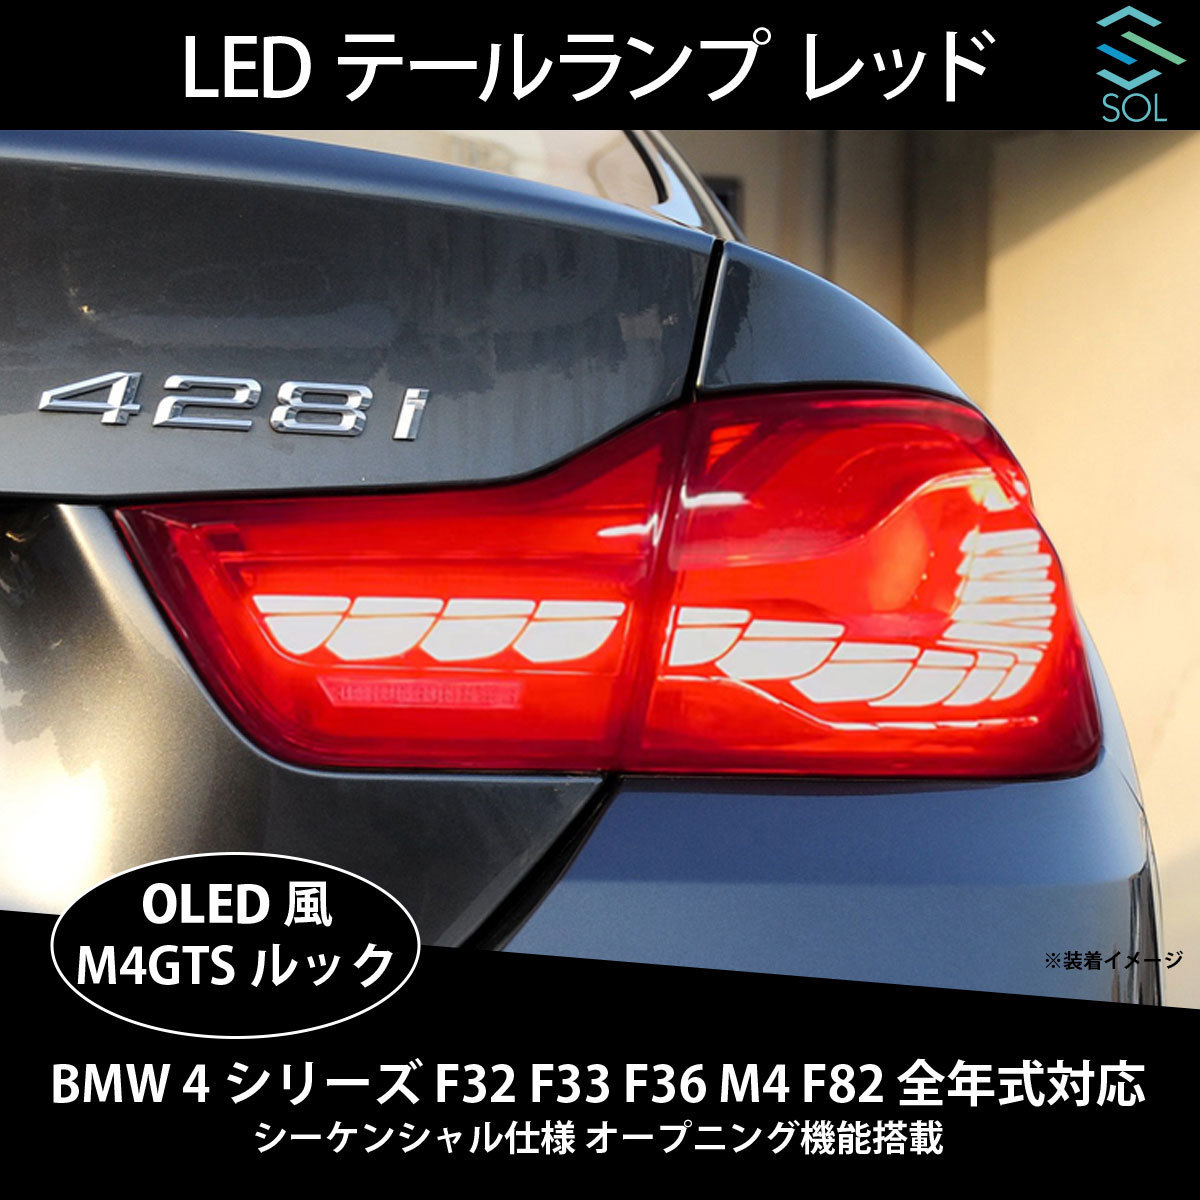 BMW 4シリーズ F32 F33 F36 M4 F82 全年式対応 M4GTSルック OLED風 LEDテールランプ レッド シーケンシャル仕様 オープニング機能搭載_画像9